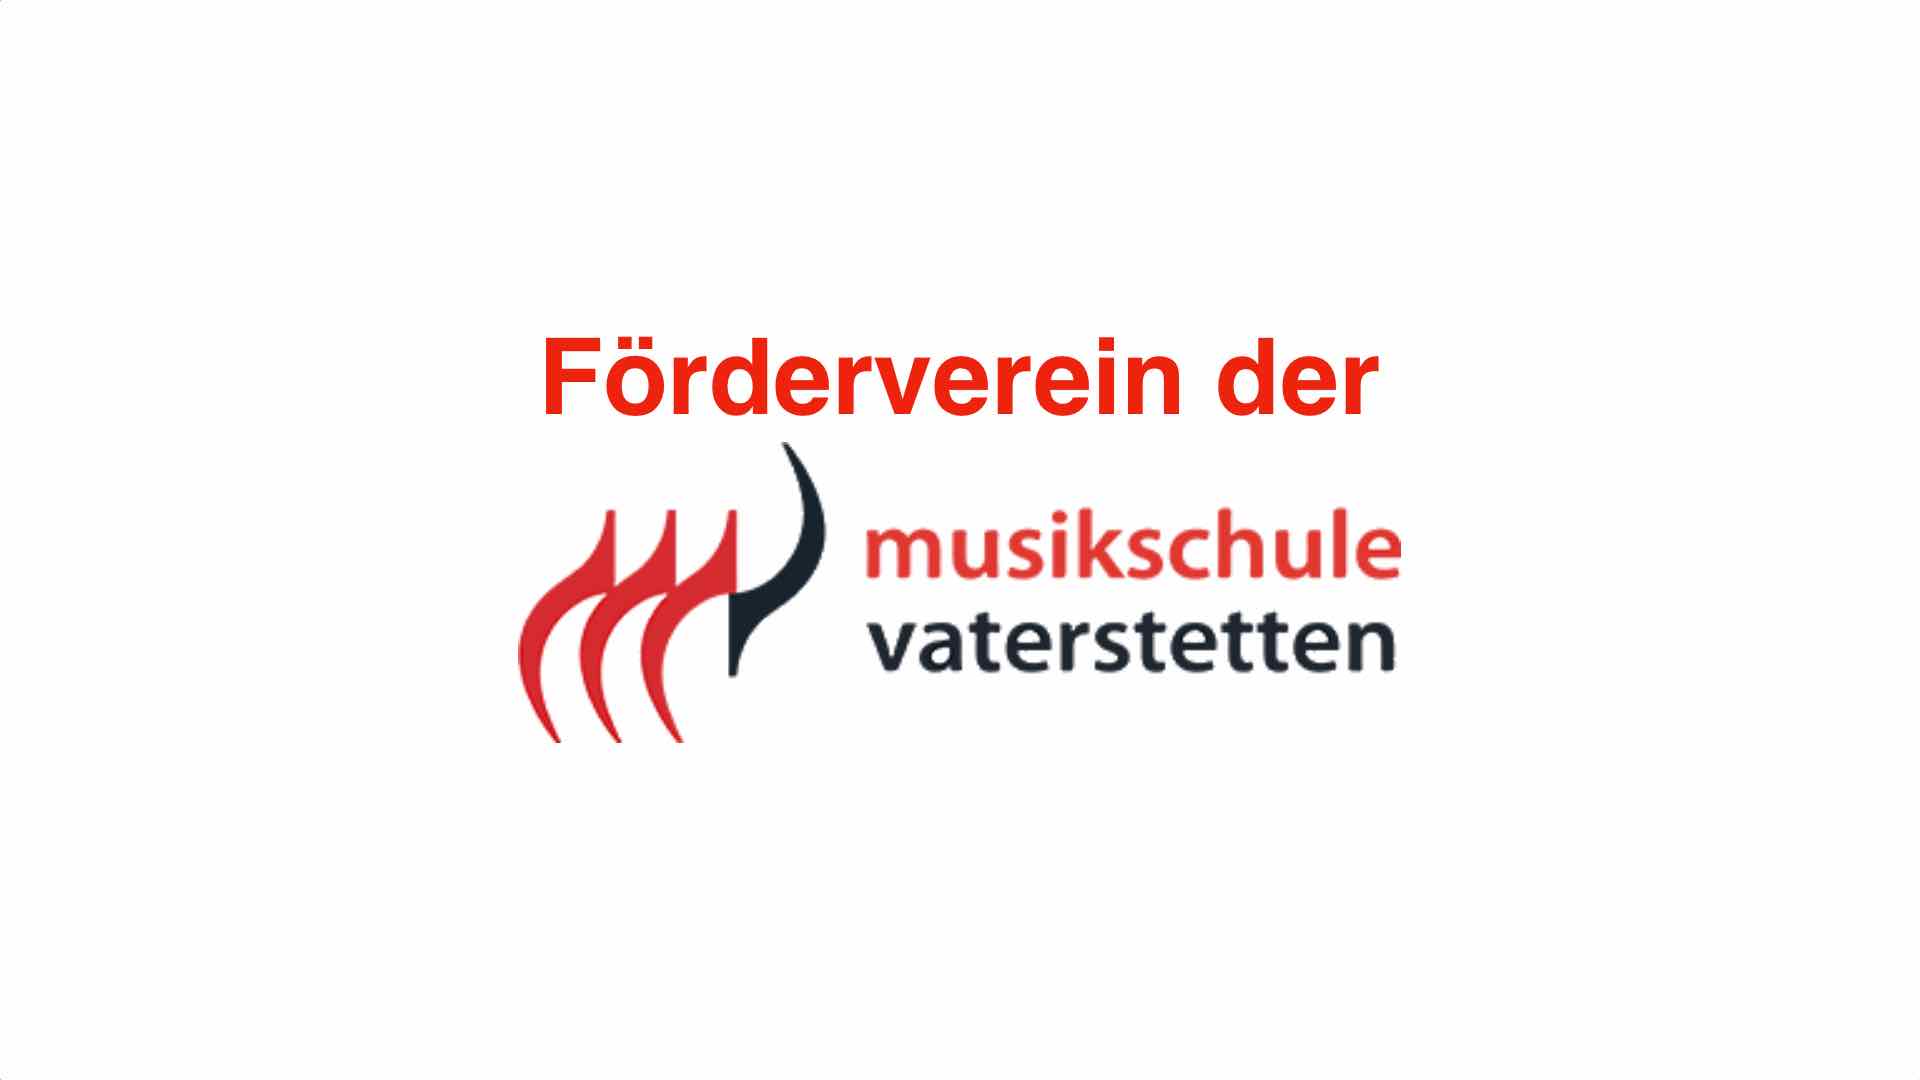 Förderverein der Musikschule Vaterstetten e. V.